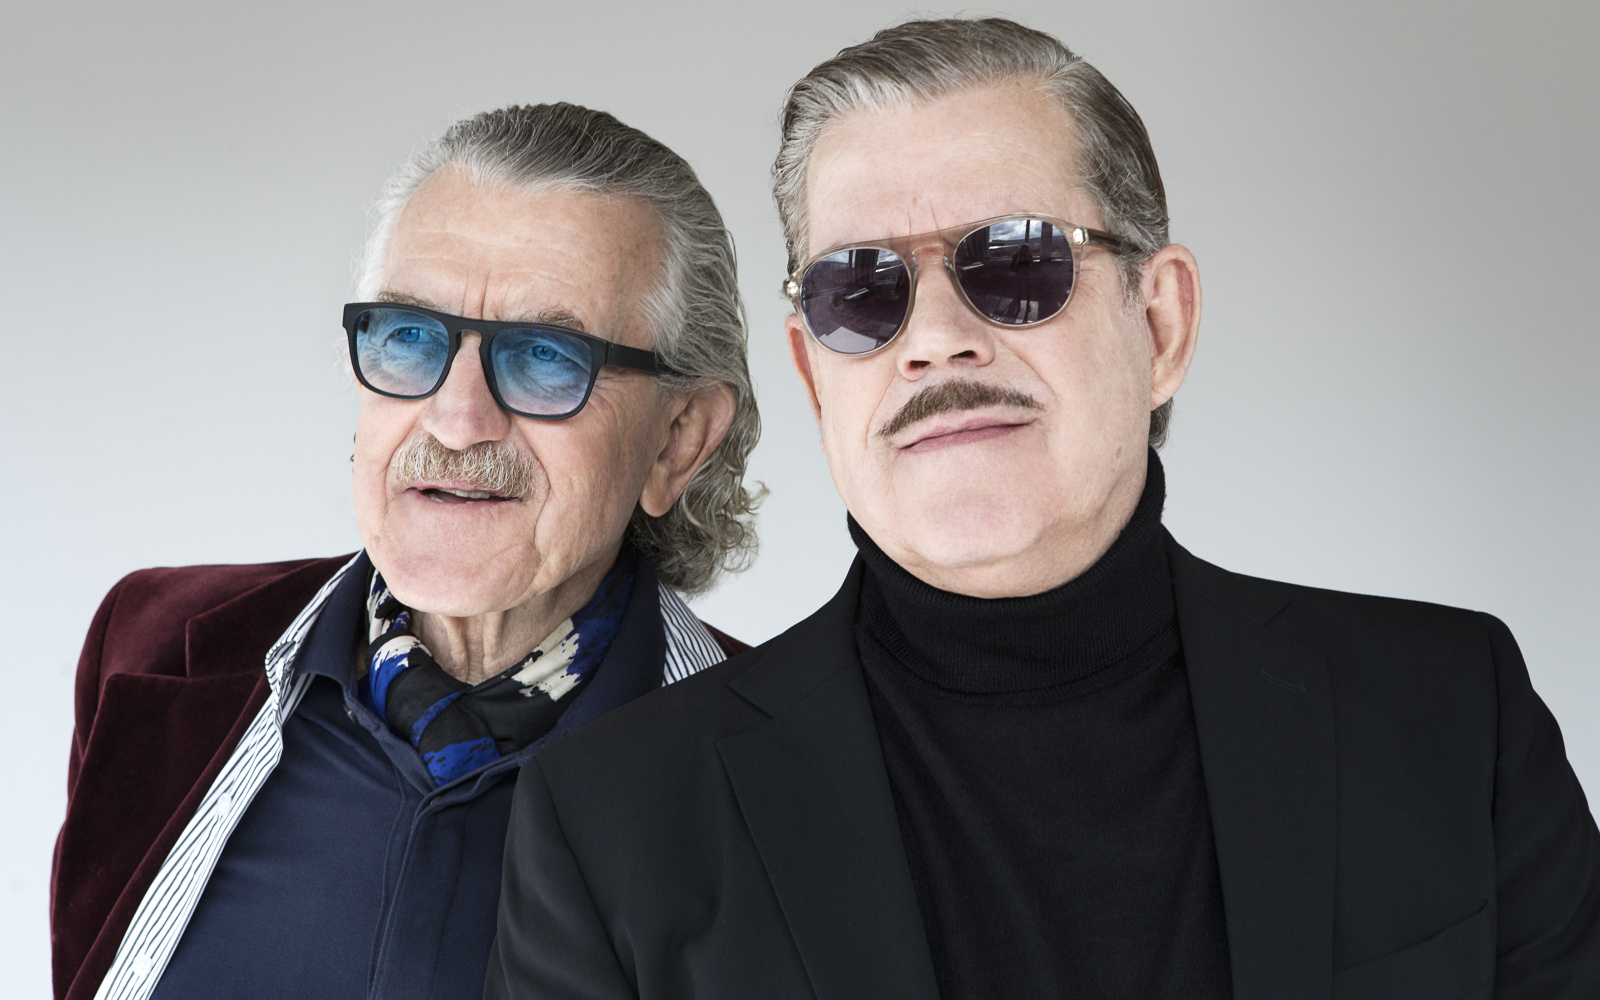 Zwei Männer stehen nebeneinander, die beiden Köpfe sind groß zu sehen. Der rechte trägt eine Sonnenbrille, einen Oberlippenbart, kurze, nach hinten gekämmte Haare und einen Rollkragen mit Jacket. Der linke trägt eine gefärbte Sonnenbrille.